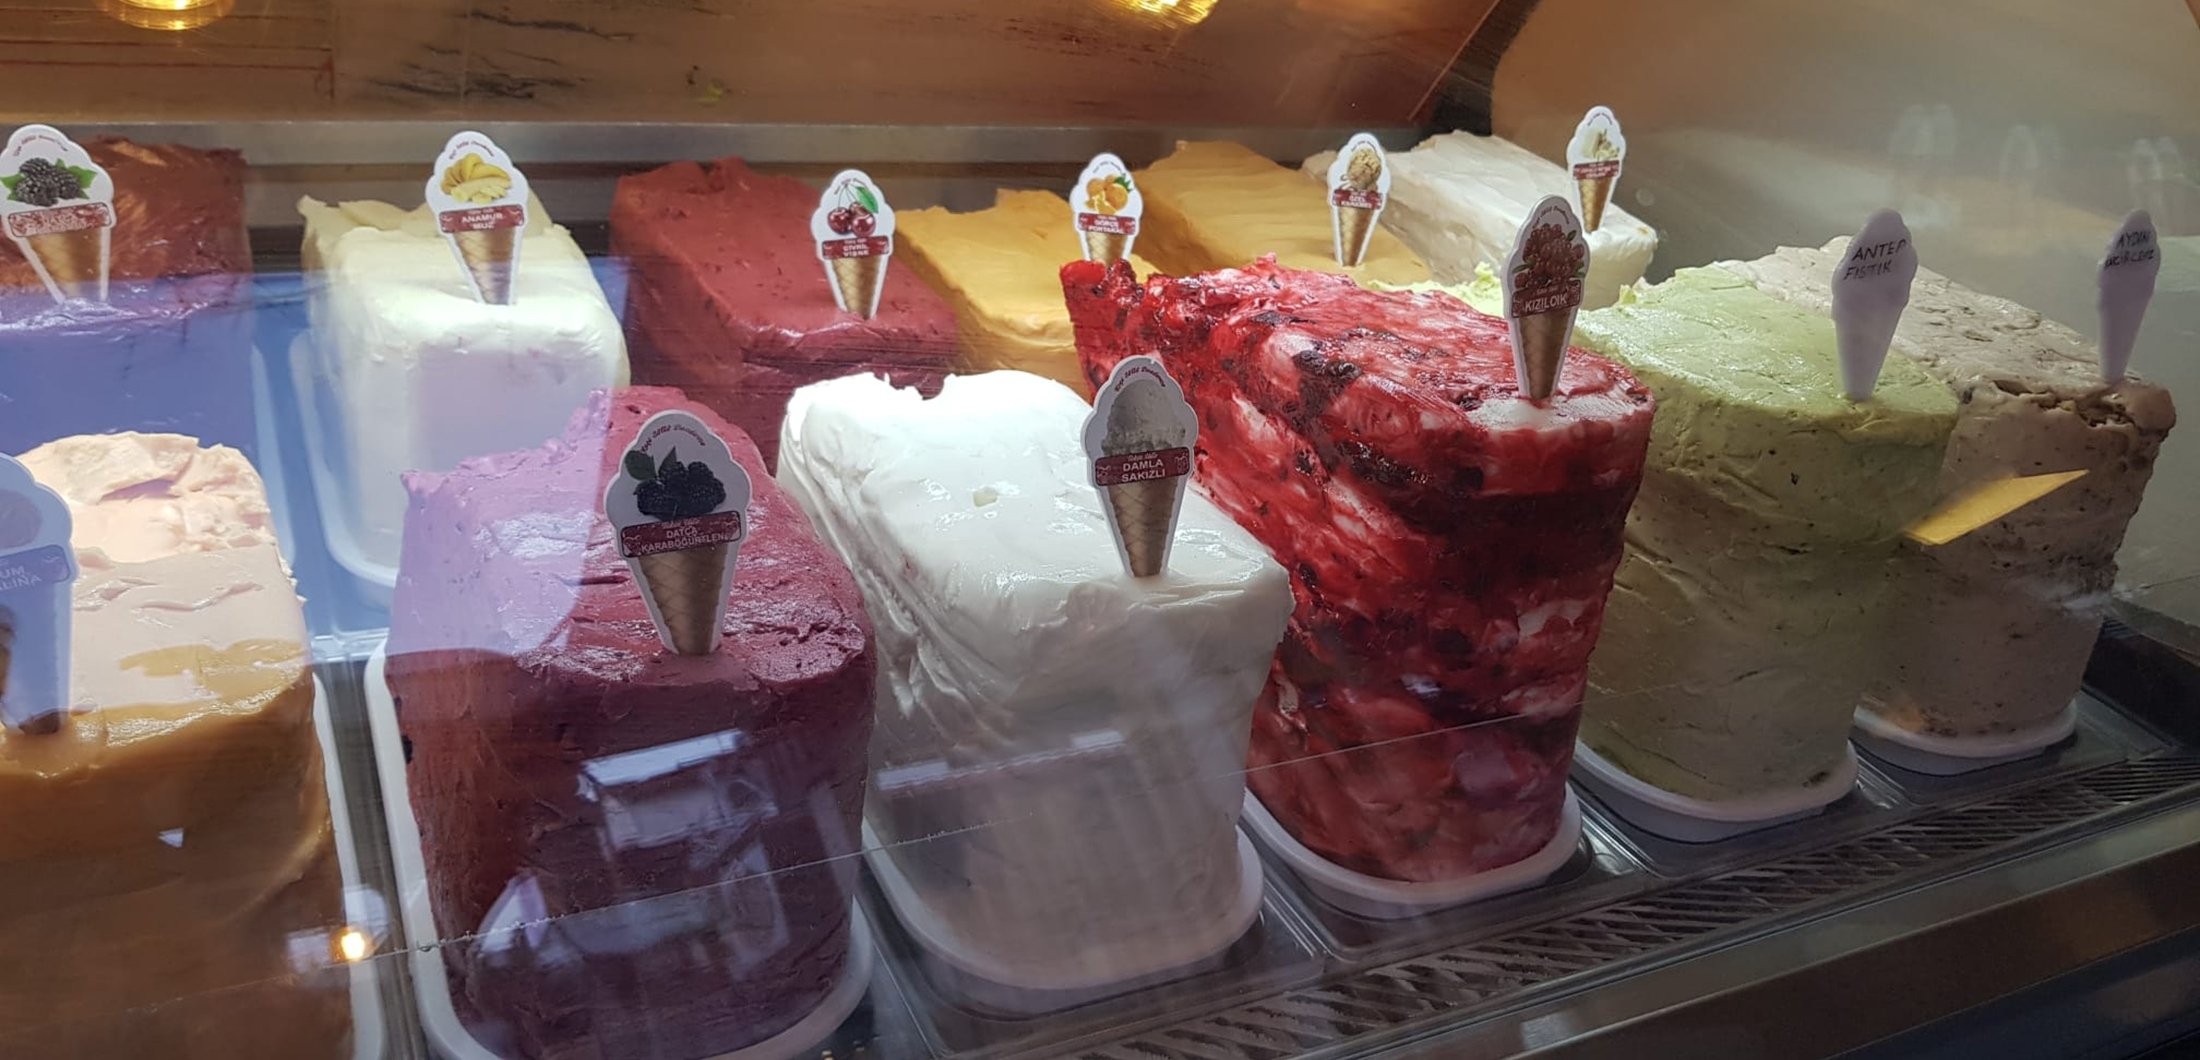 Muğla, Türkiye'deki Tekin Usta Keçi Sütü Dondurma Dükkanı'nda çeşitli dondurma lezzetleri.  (Fotoğraf, Layla Yvonne Argyll'in izniyle)